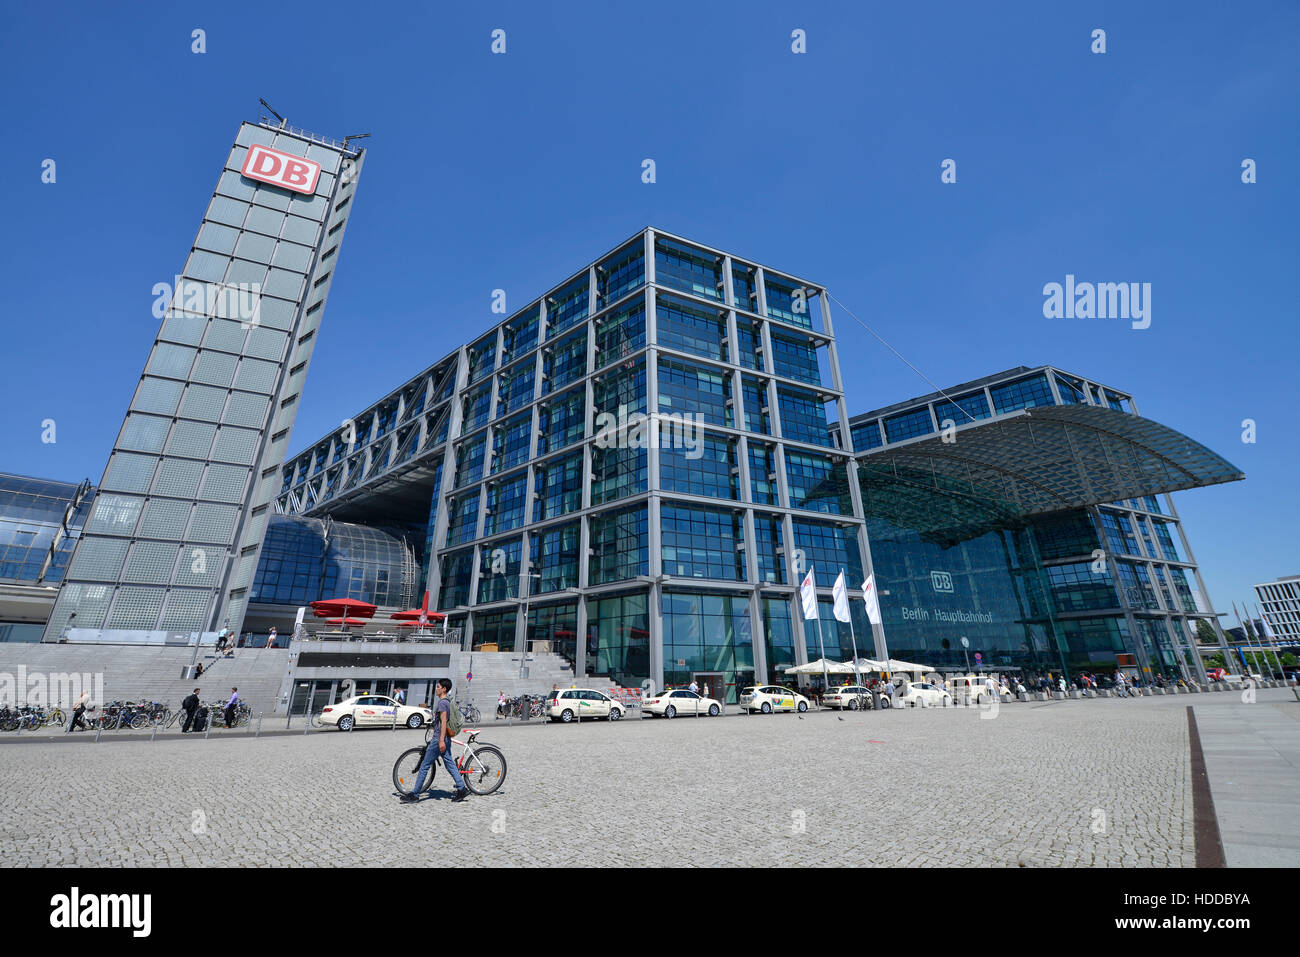 Hauptbahnhof, Moabit, Mitte, Berlin, Deutschland Banque D'Images